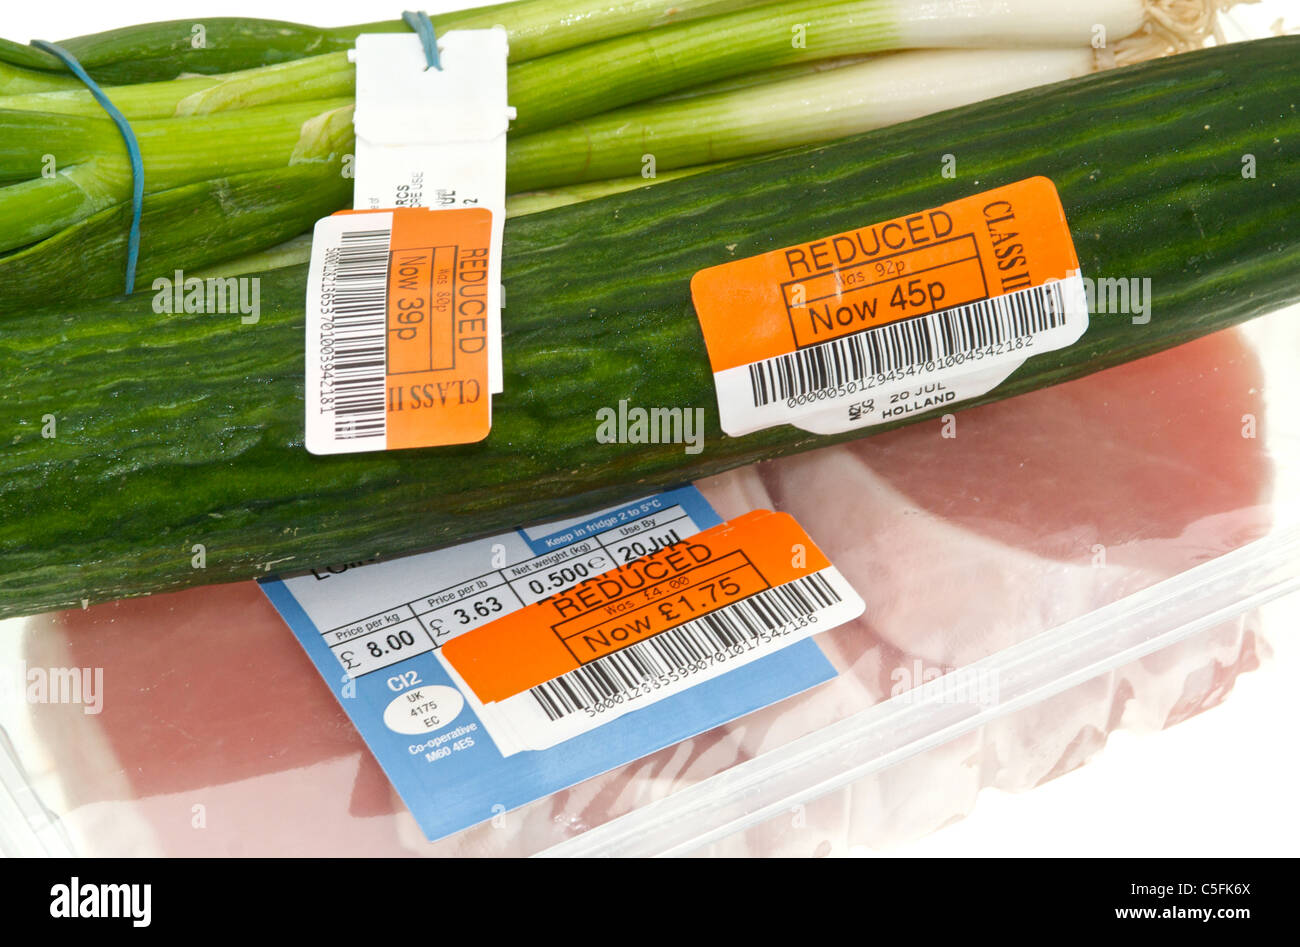 Prezzo ridotto di etichette sui prodotti alimentari Foto Stock